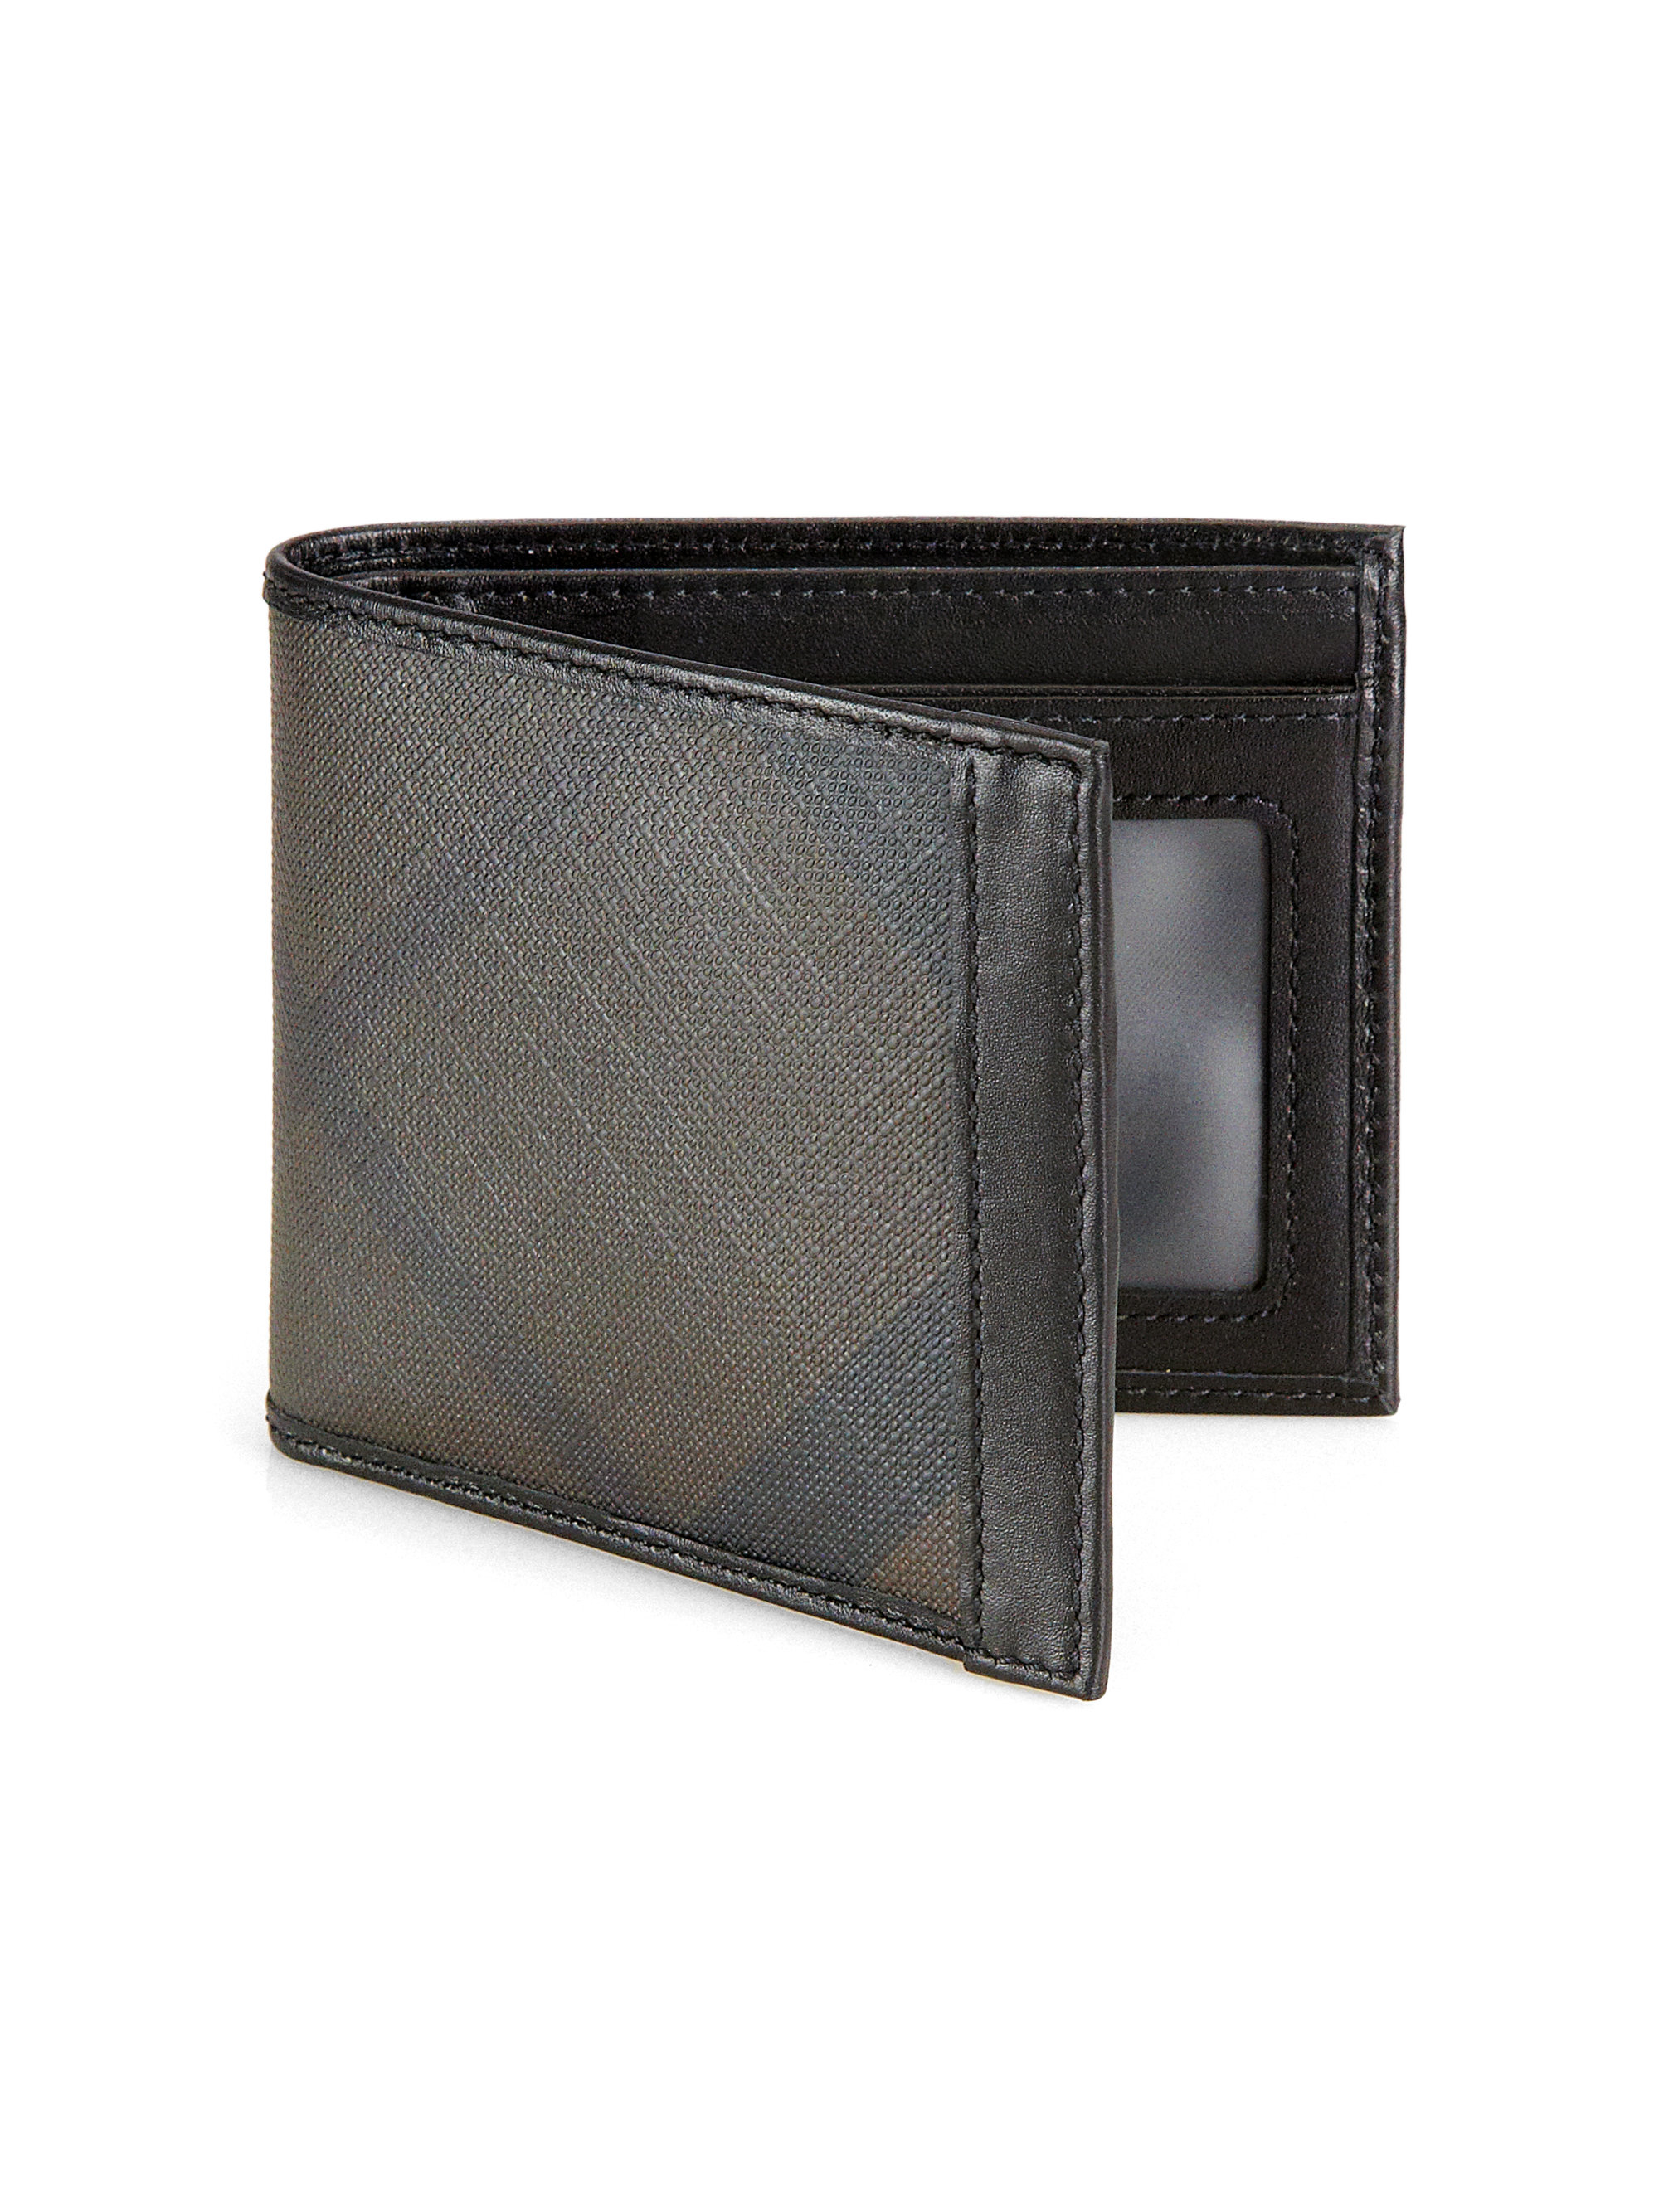 Lyst - Burberry Id Billfold Wallet in Black for Men